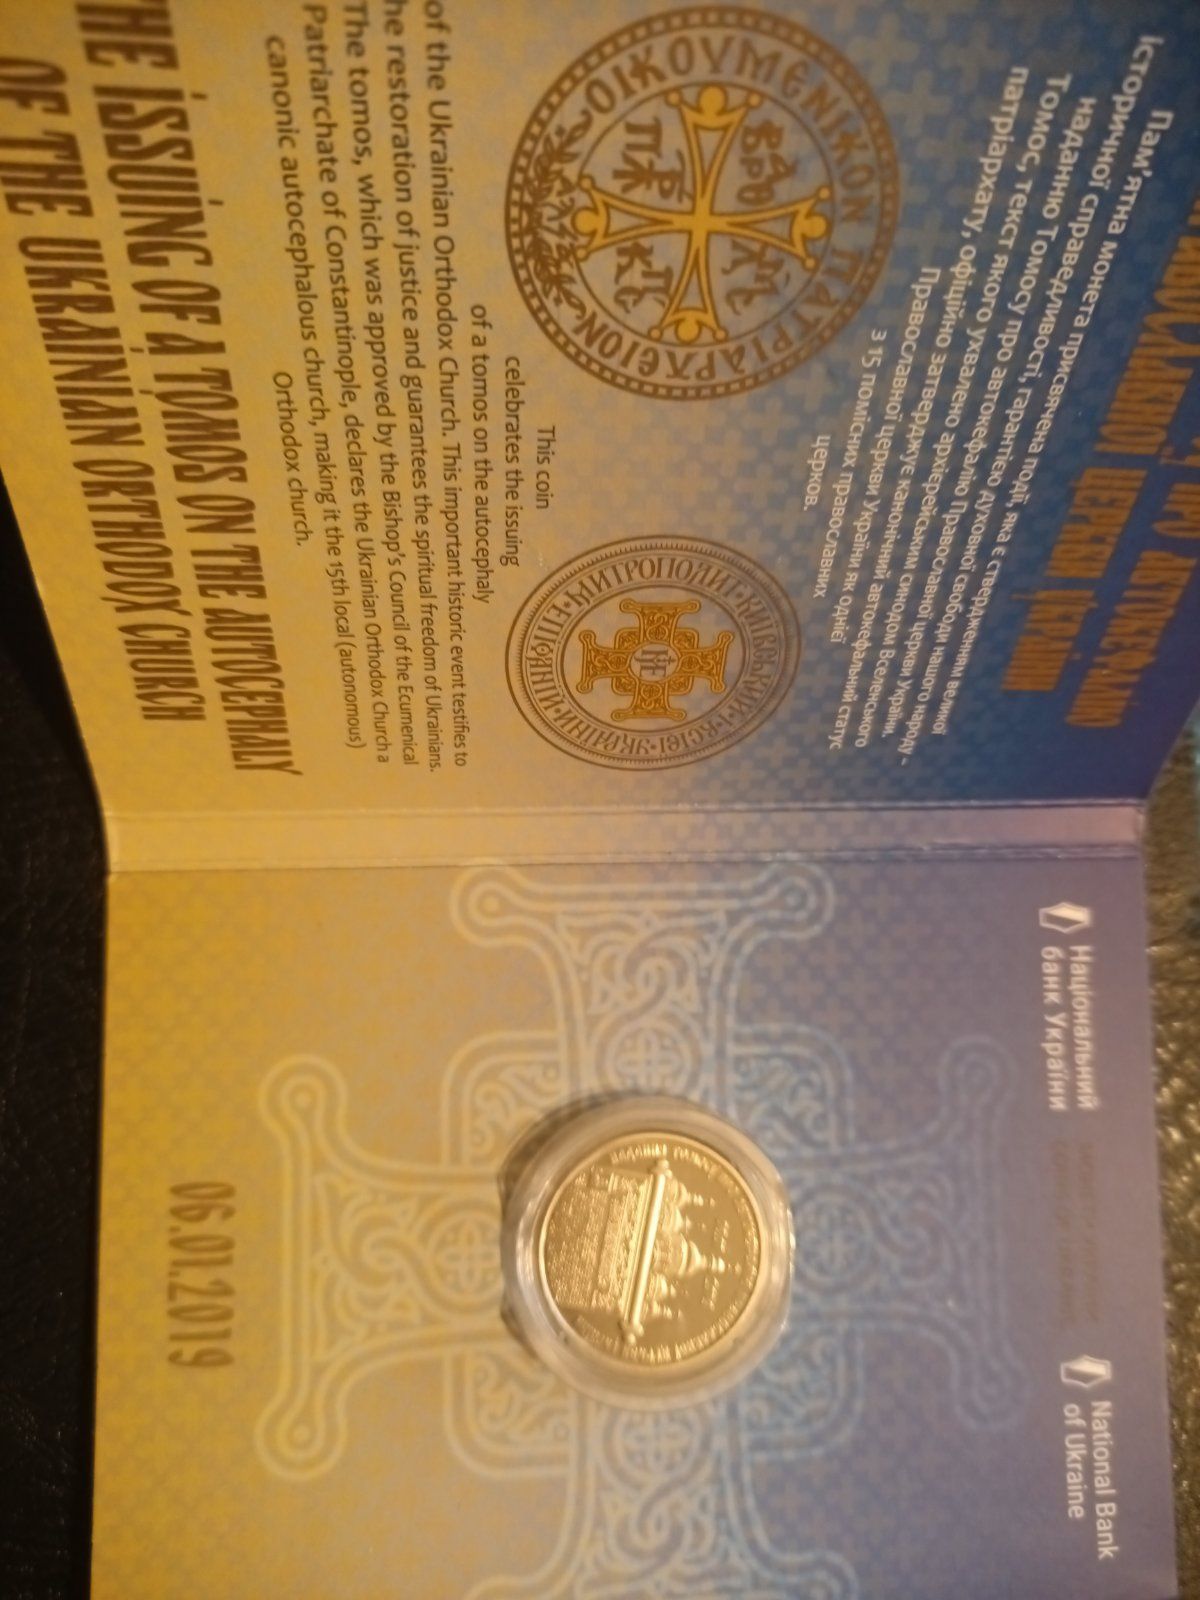 Україна монета 5 гривень 2019 року Надання Томосу про автокефалію